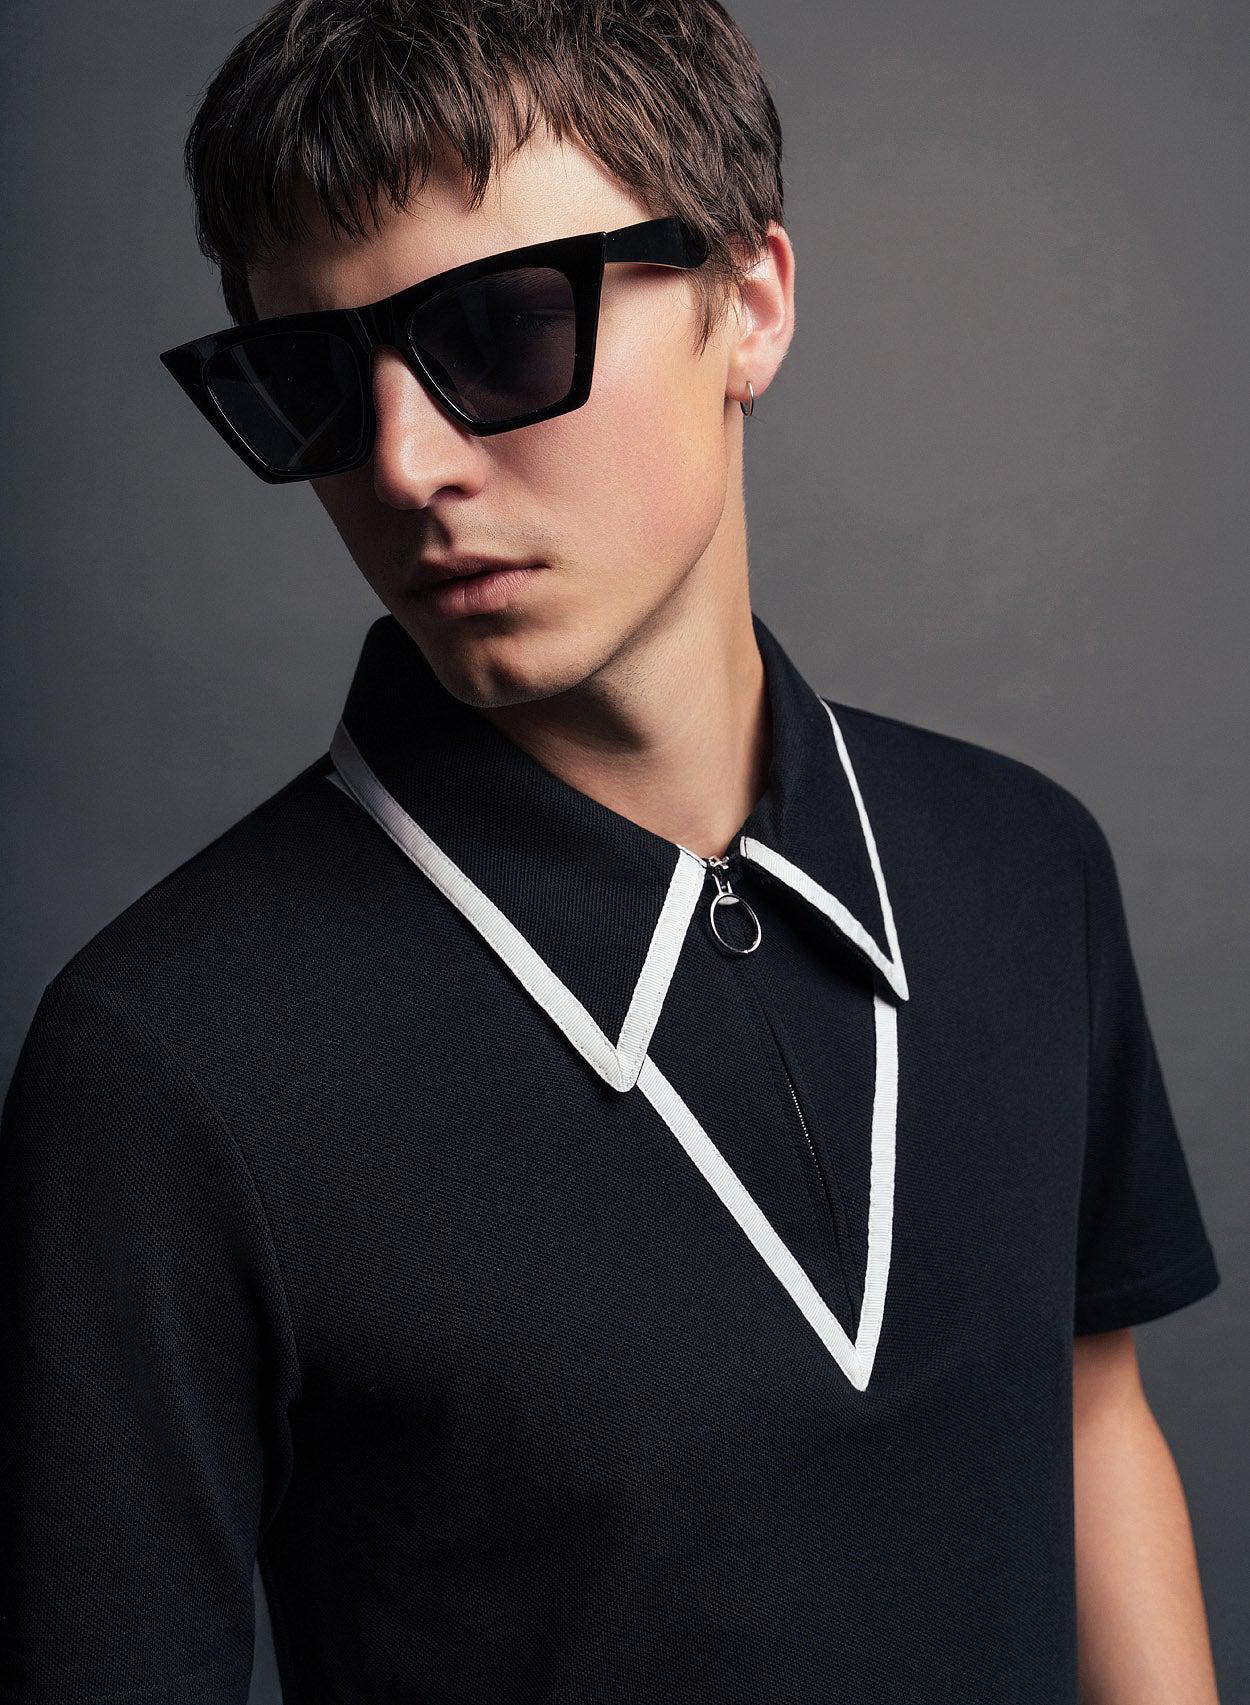 Black Carnaby Circle Zip Cotton Polo Shirt ‐ Phix